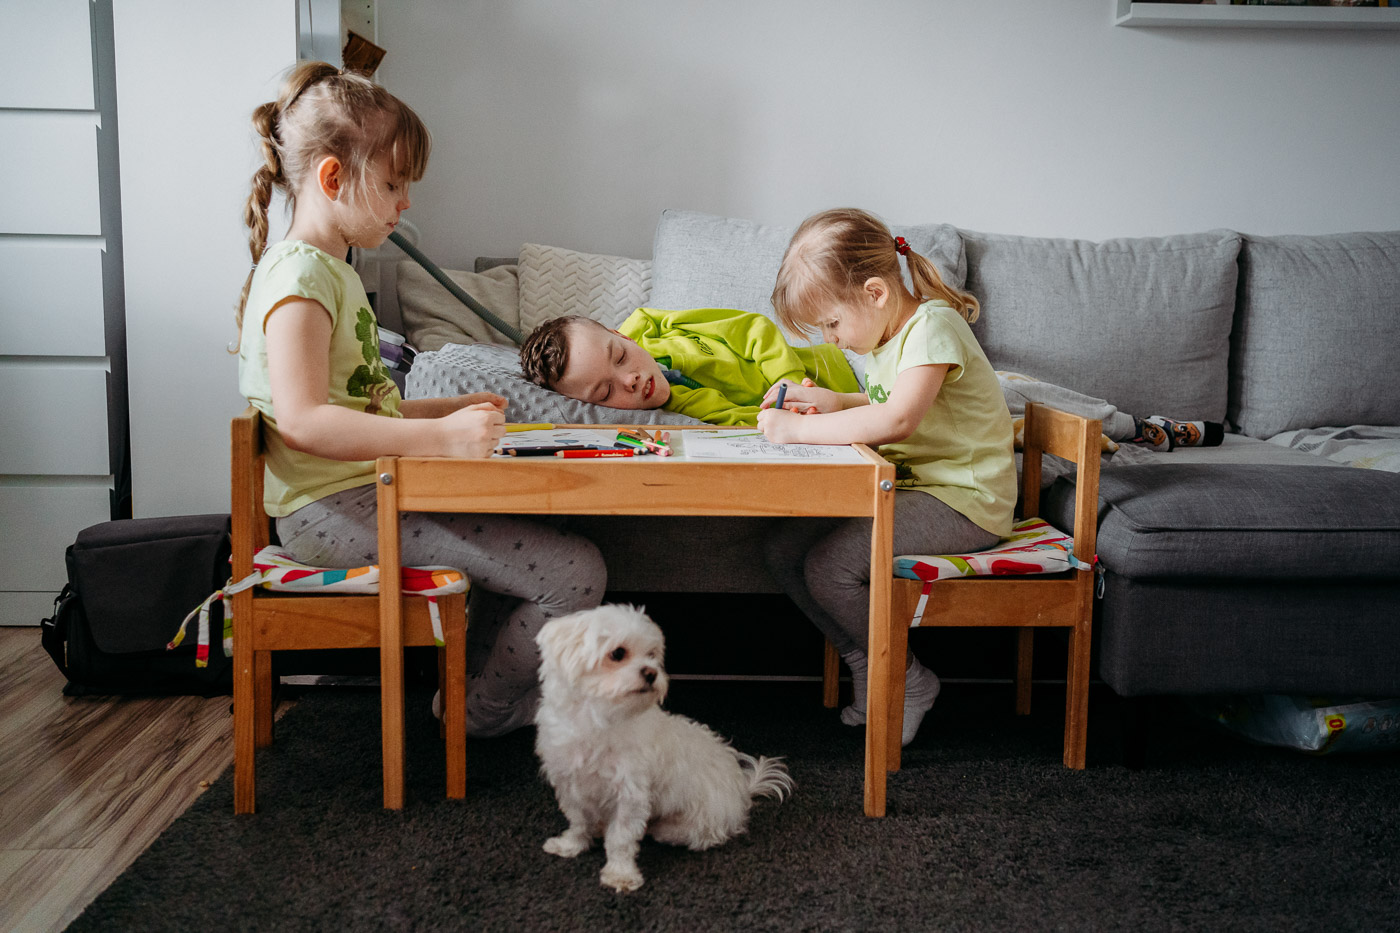 Dzieci rysują, obok siedzi pies maltańczyk, sesja rodzinna lifestylowa Łódź